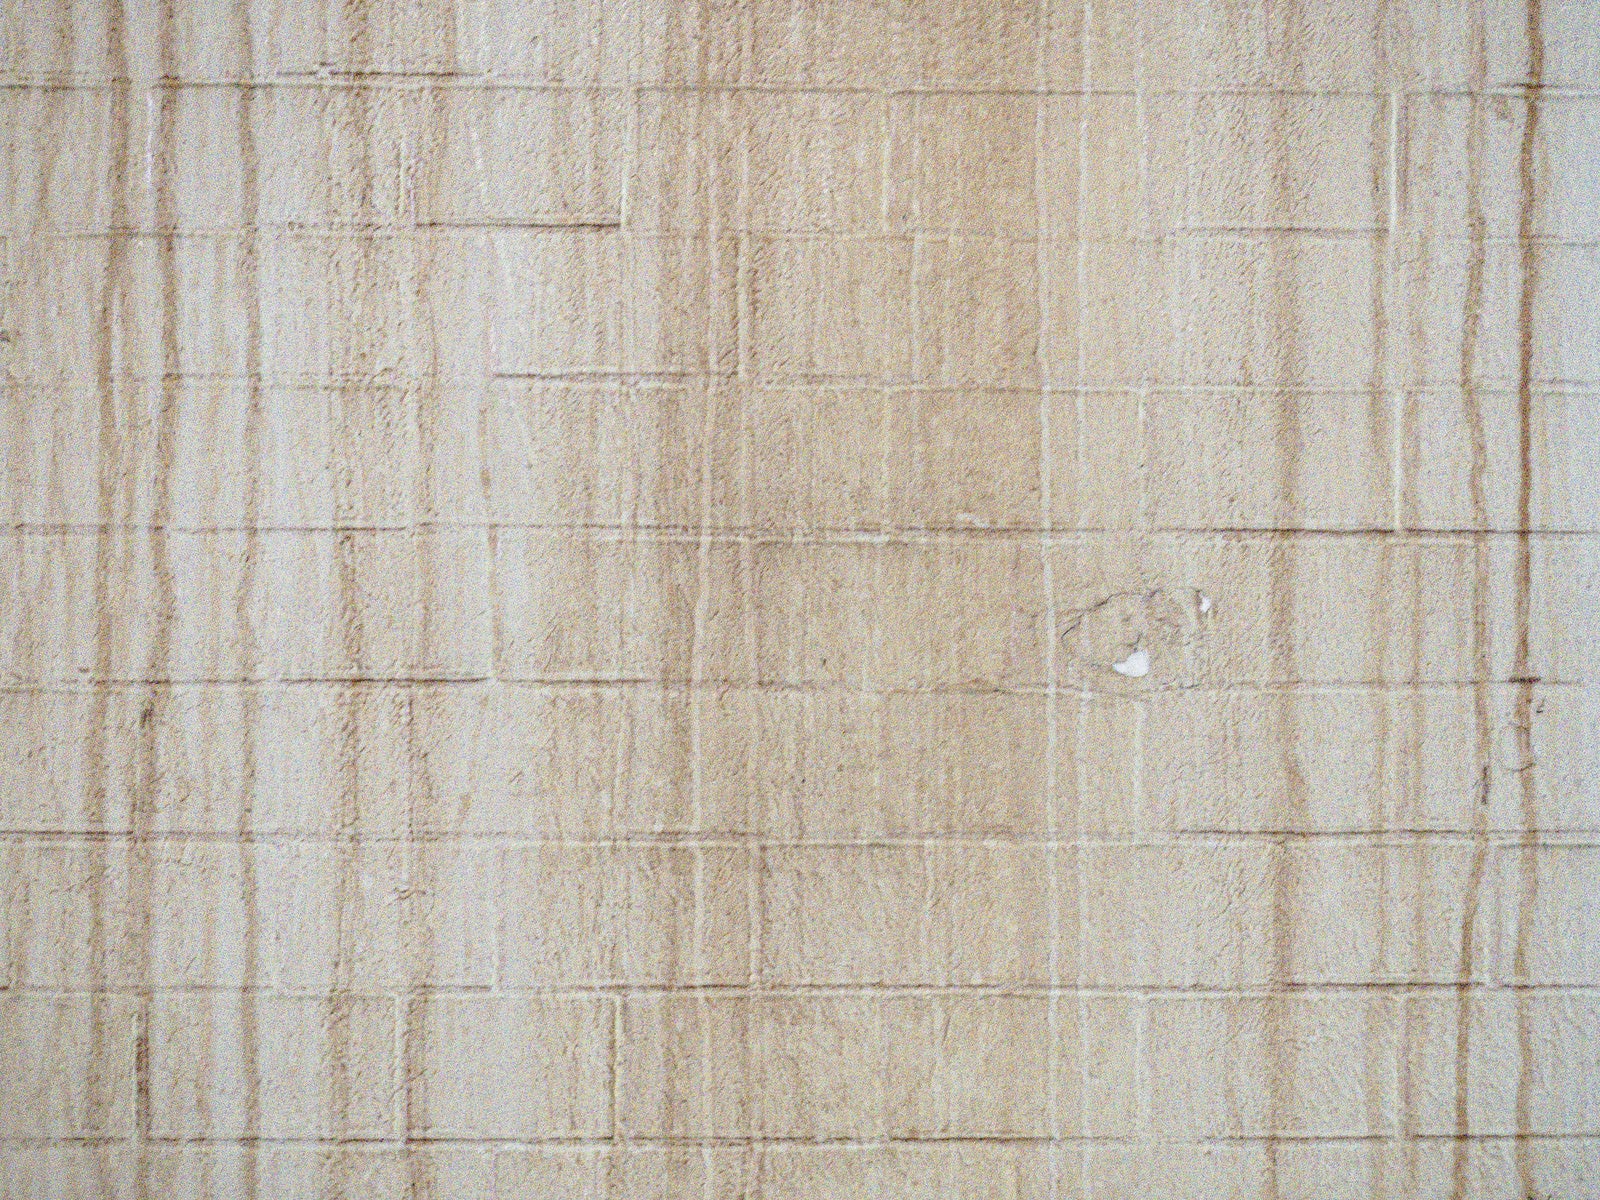 「筋汚れが目立つ壁のテクスチャ」の写真